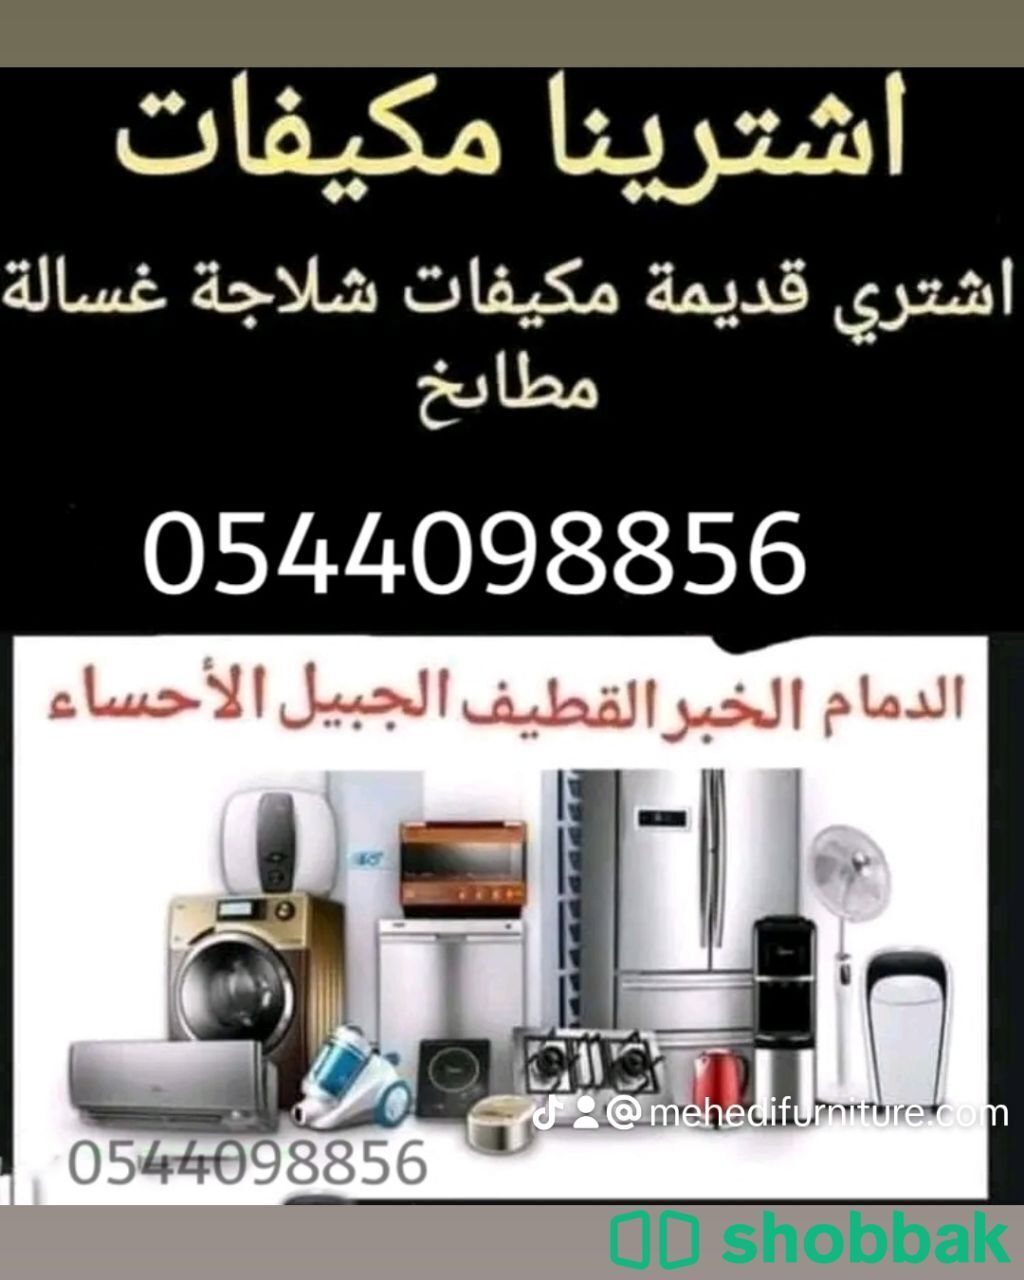 شراء وبيع الاثاث القديم والسكراب شركة 0544098856 Shobbak Saudi Arabia